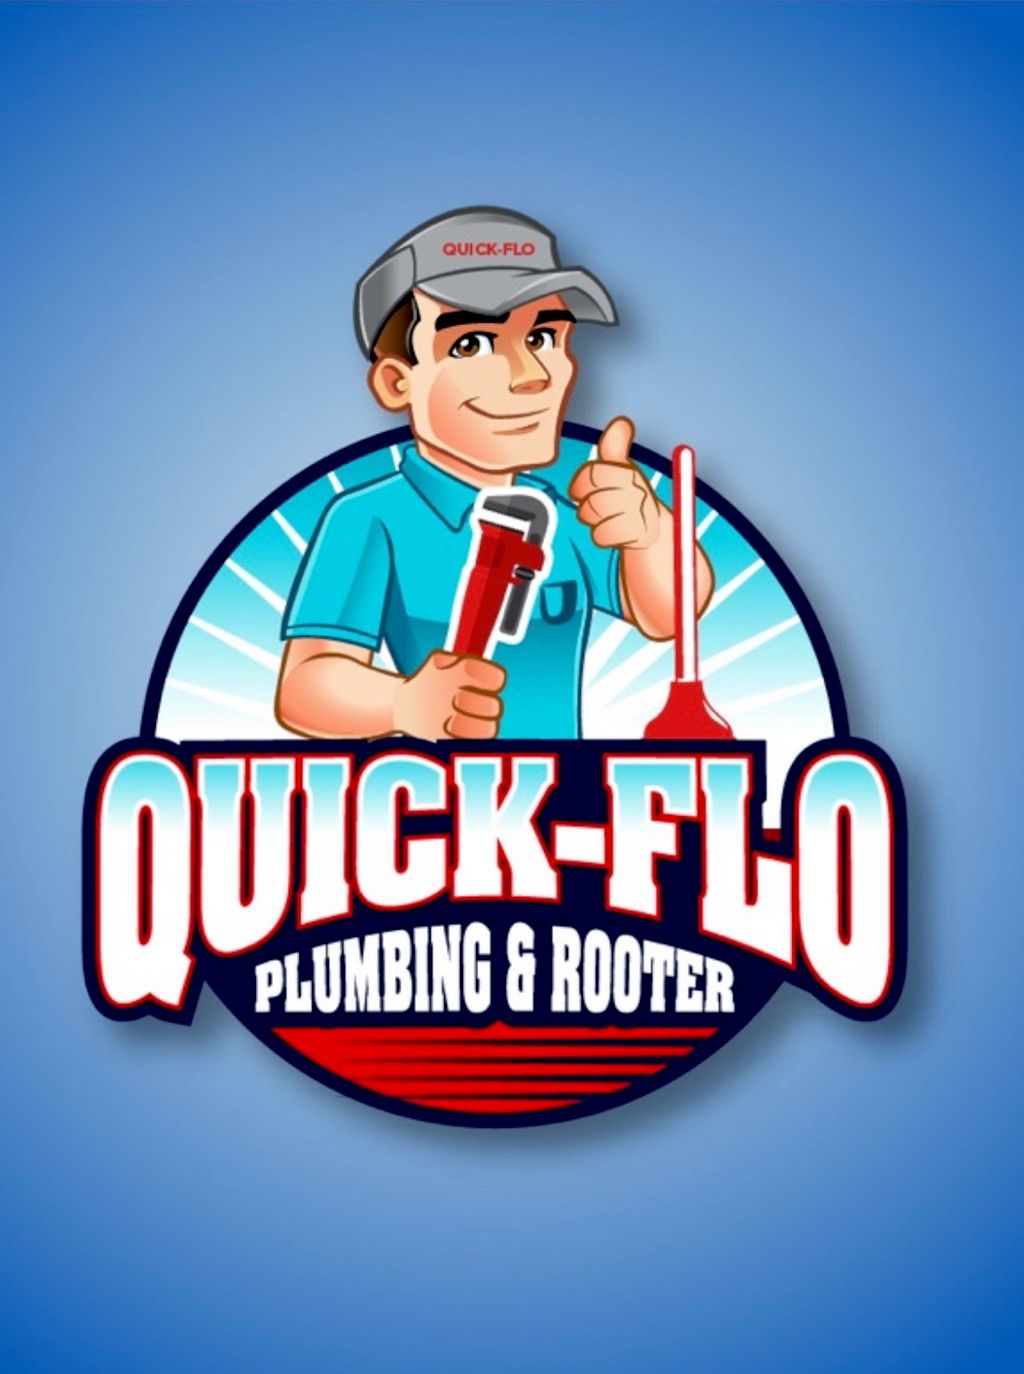 Quick-Flo Plumbing & Rooter